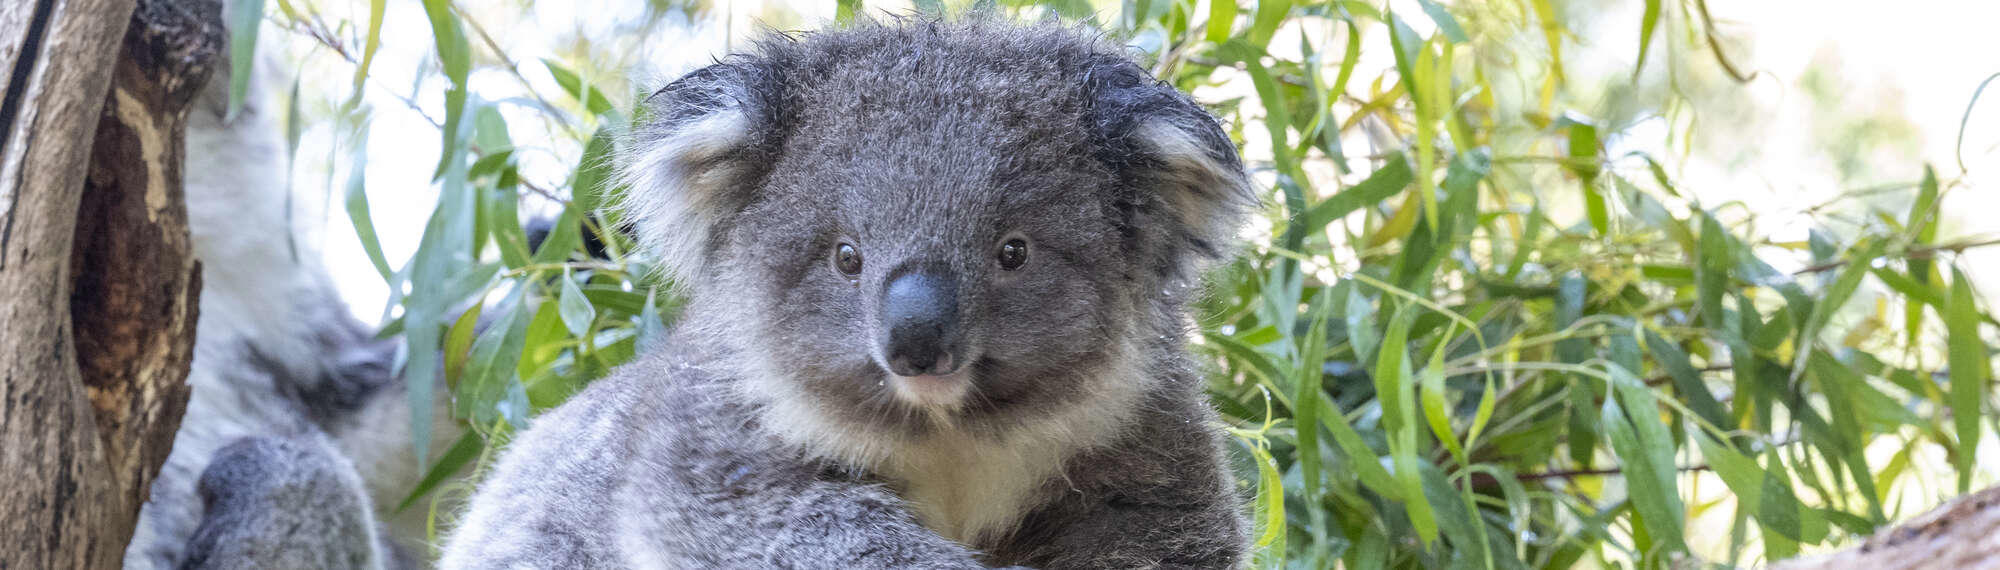 Fluffy grey male Koala Joey climbing across a tree branch